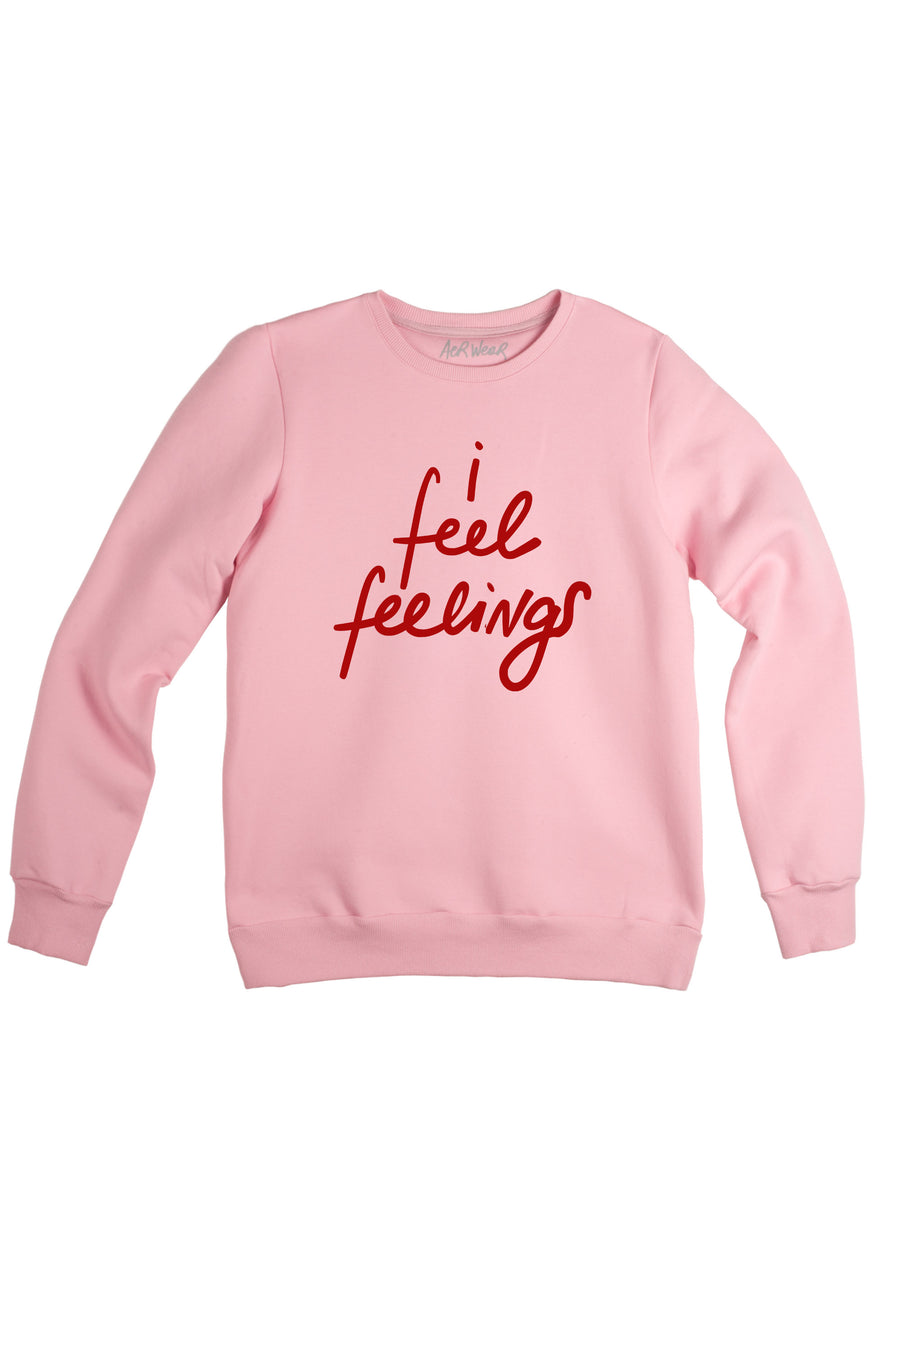 I FEEL FEELINGS sweatshirt